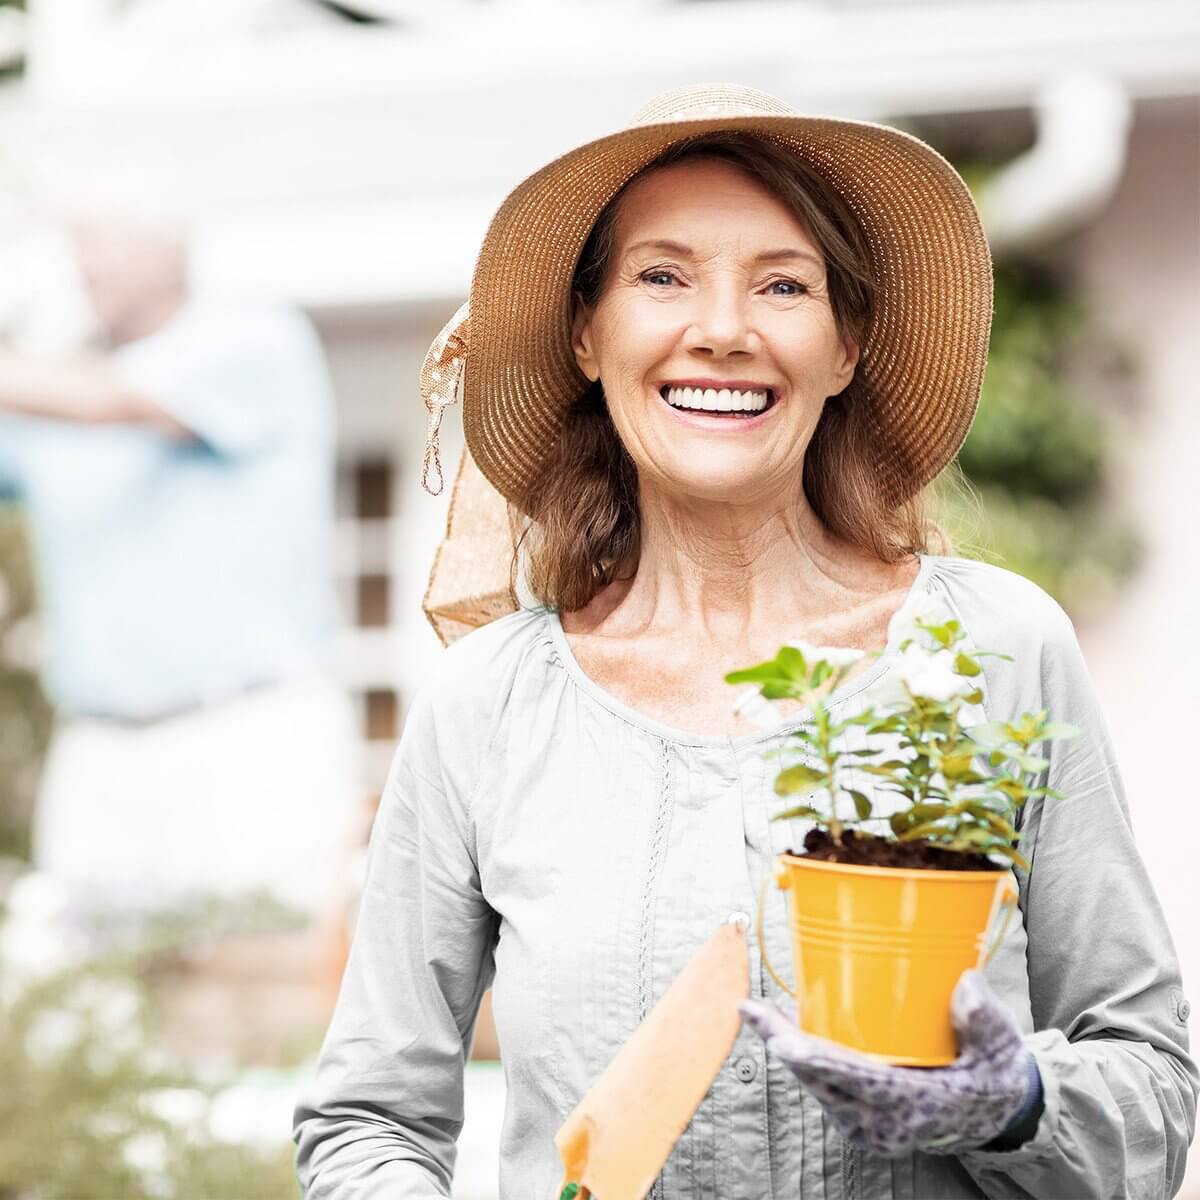 GELENK AKTIV forte: Frau steht lächelnd im Garten mit einer Topfpflanze und einer kleinen Schippe in den Händen